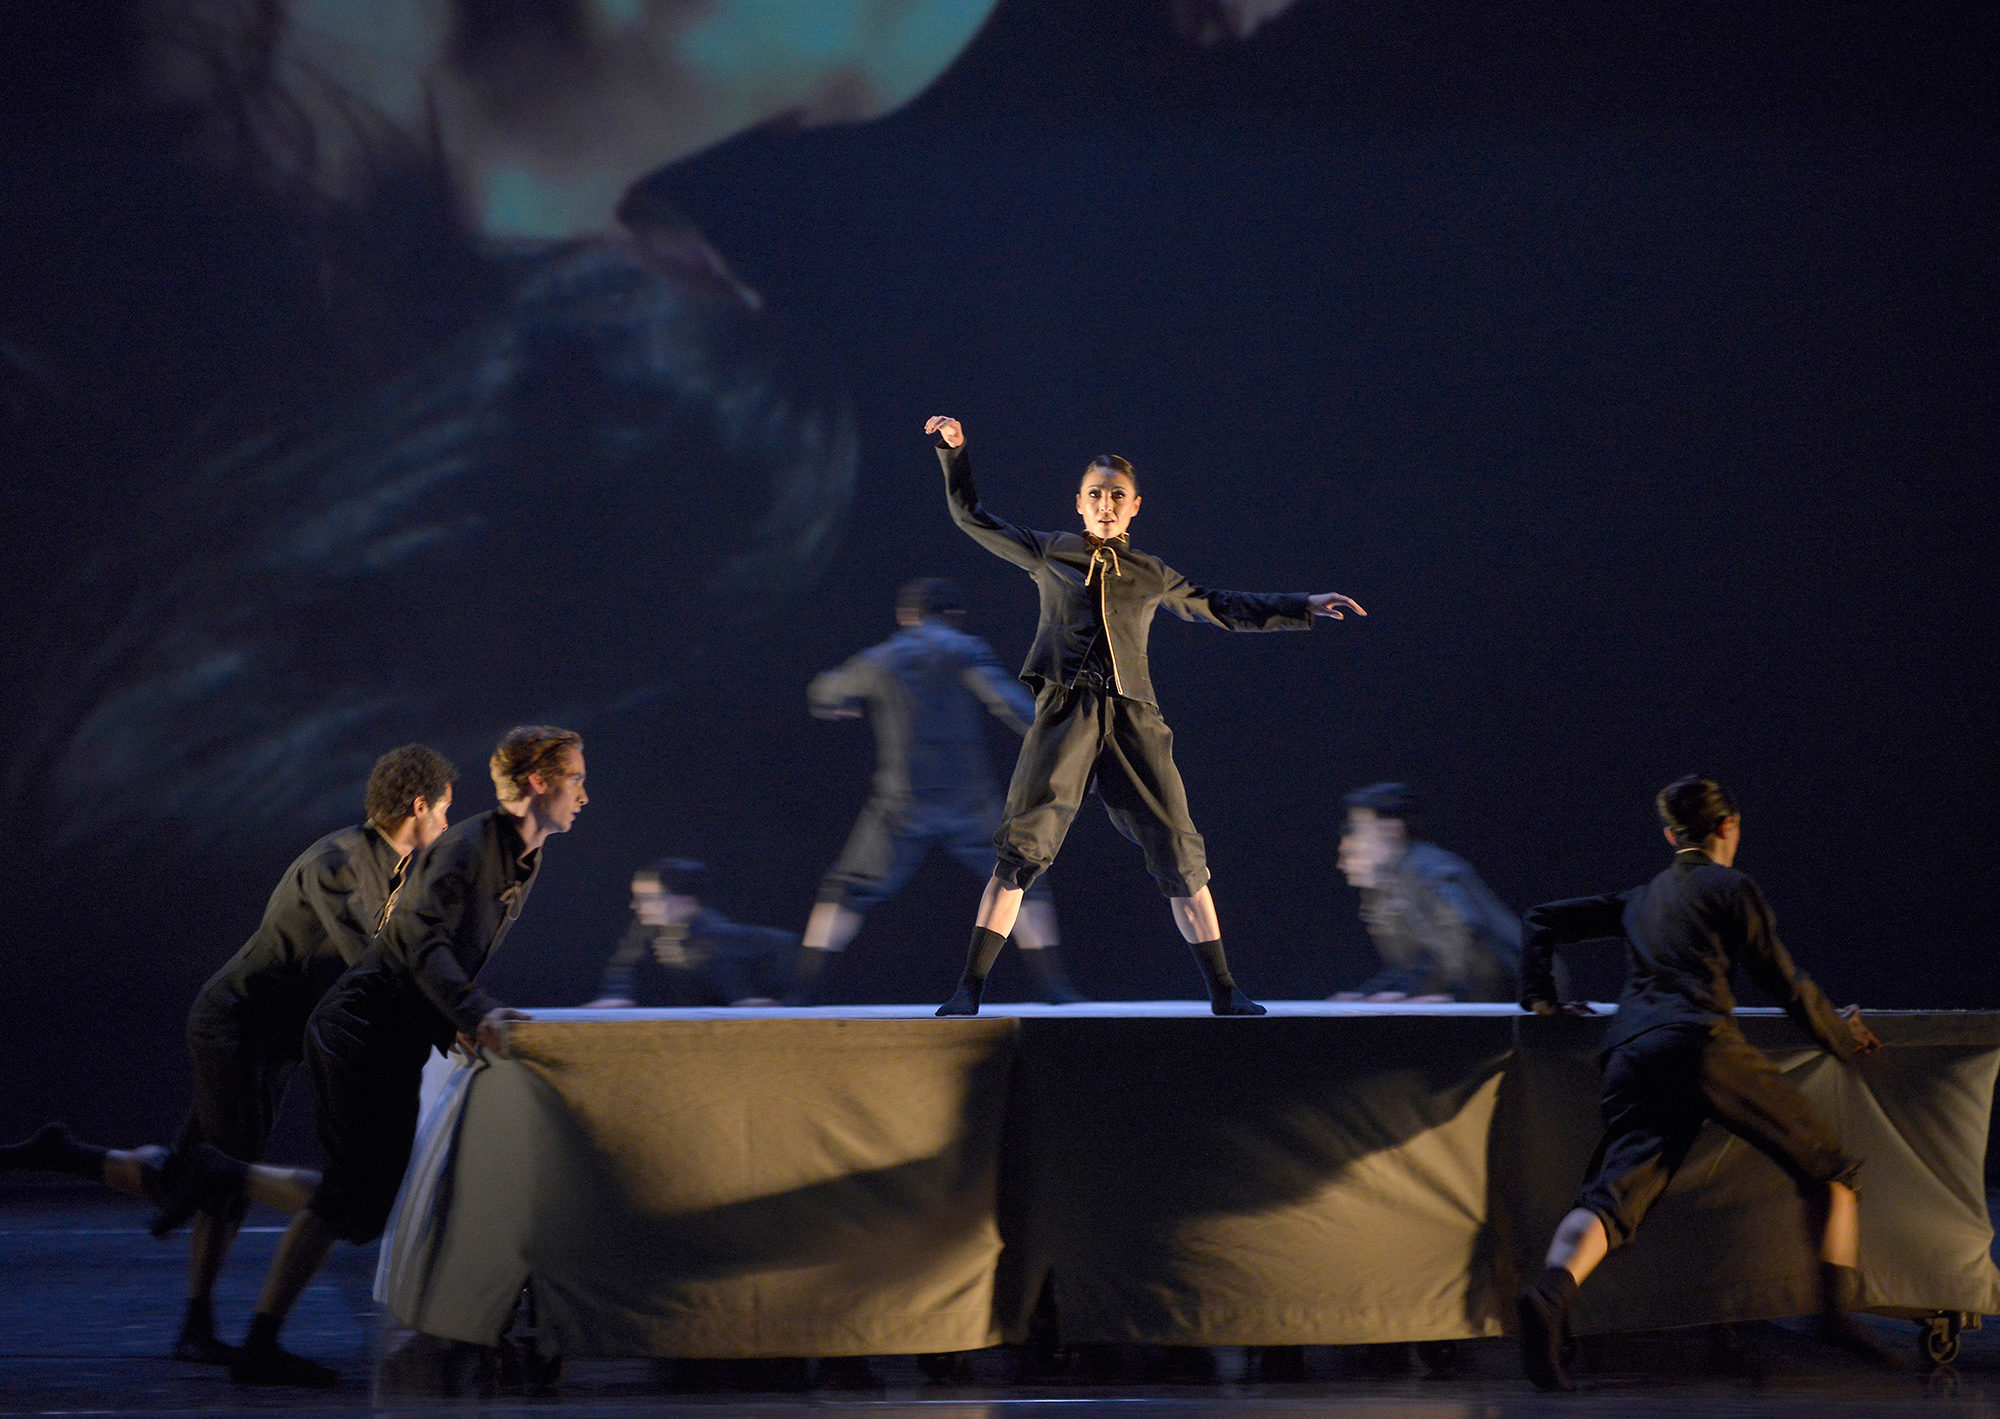 Yulia Tsoi, Ensemble in "Flockwork" - Teil des Ballettabends "3 BY EKMAN" mit Werken von Alexander Ekman_AALTO BALLETT ESSEN